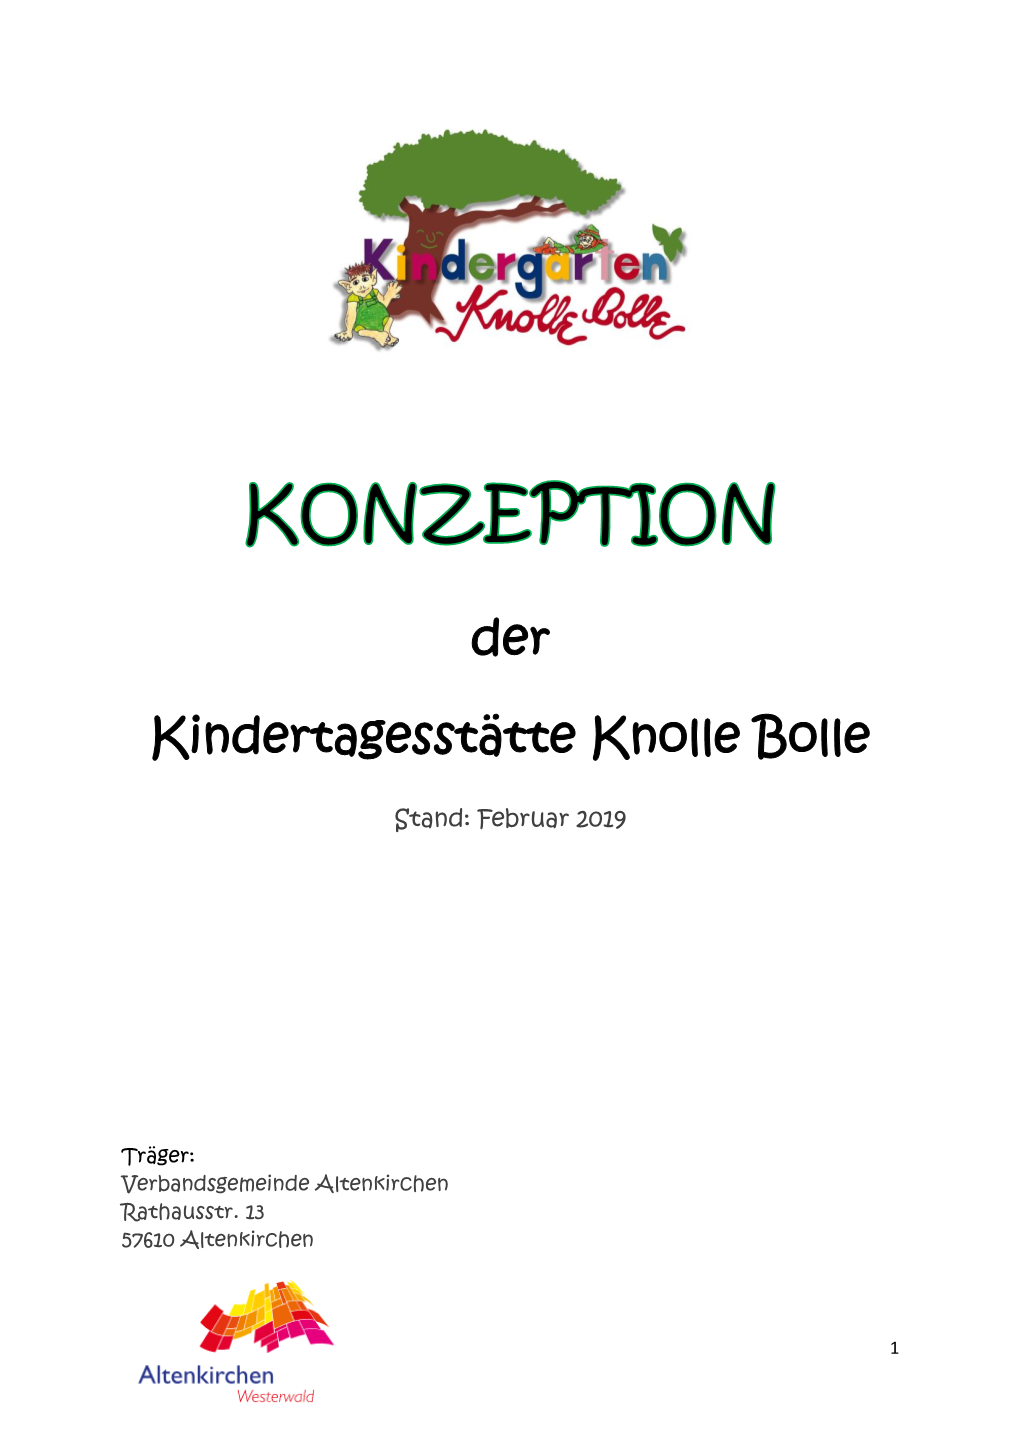 Der Kindertagesstätte Knolle Bolle